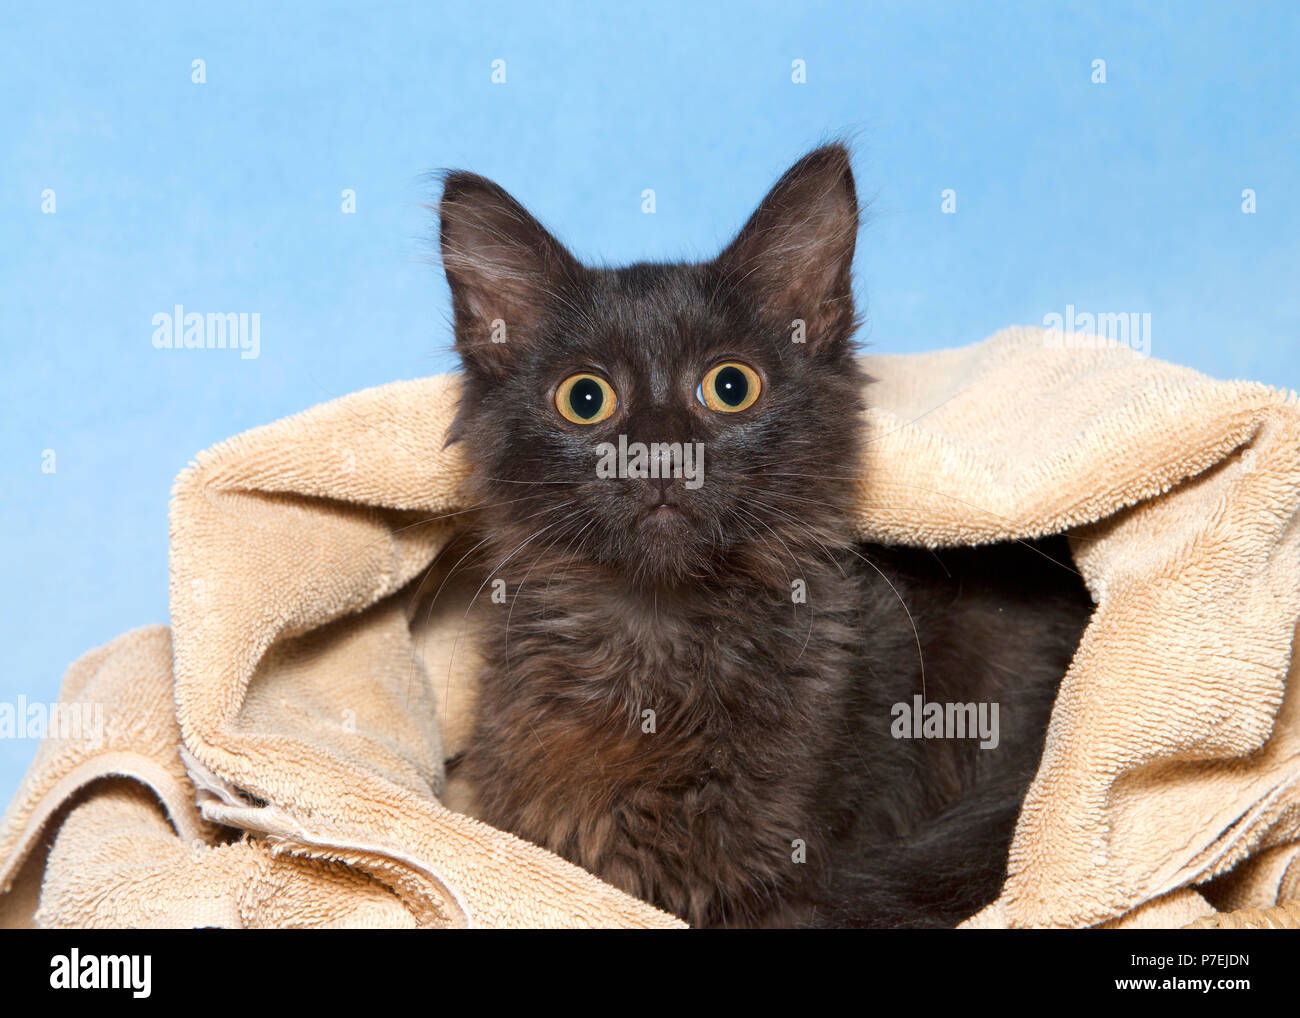 Petit chaton noir moelleux avec des yeux jaune d'or en pointe d'une couverture, fond bleu. Les yeux grands ouverts à la recherche directement au spectateur. Banque D'Images